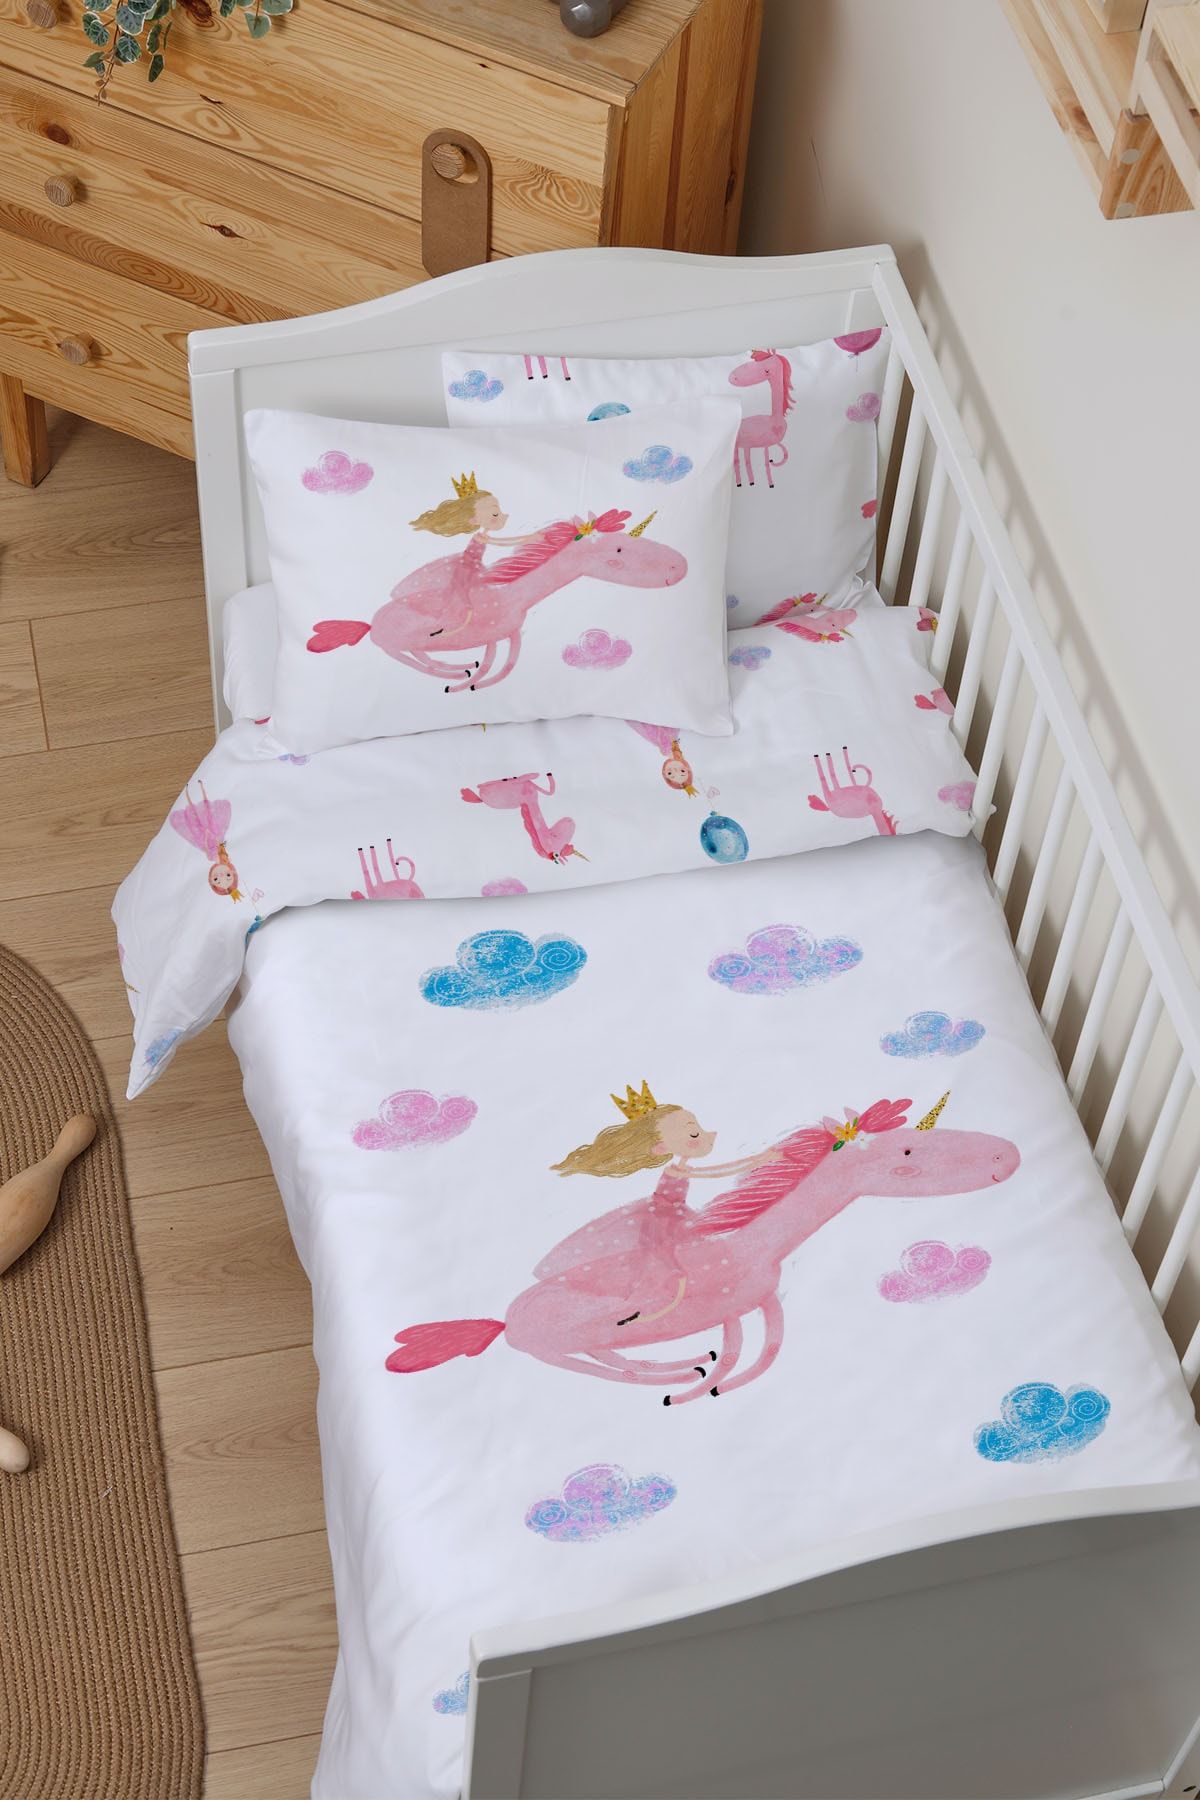 Tuğba Kuğu Organik Bebek Nevresim Takımı (100X150) - For Baby Serisi - Prensesle Uçan Unicorn